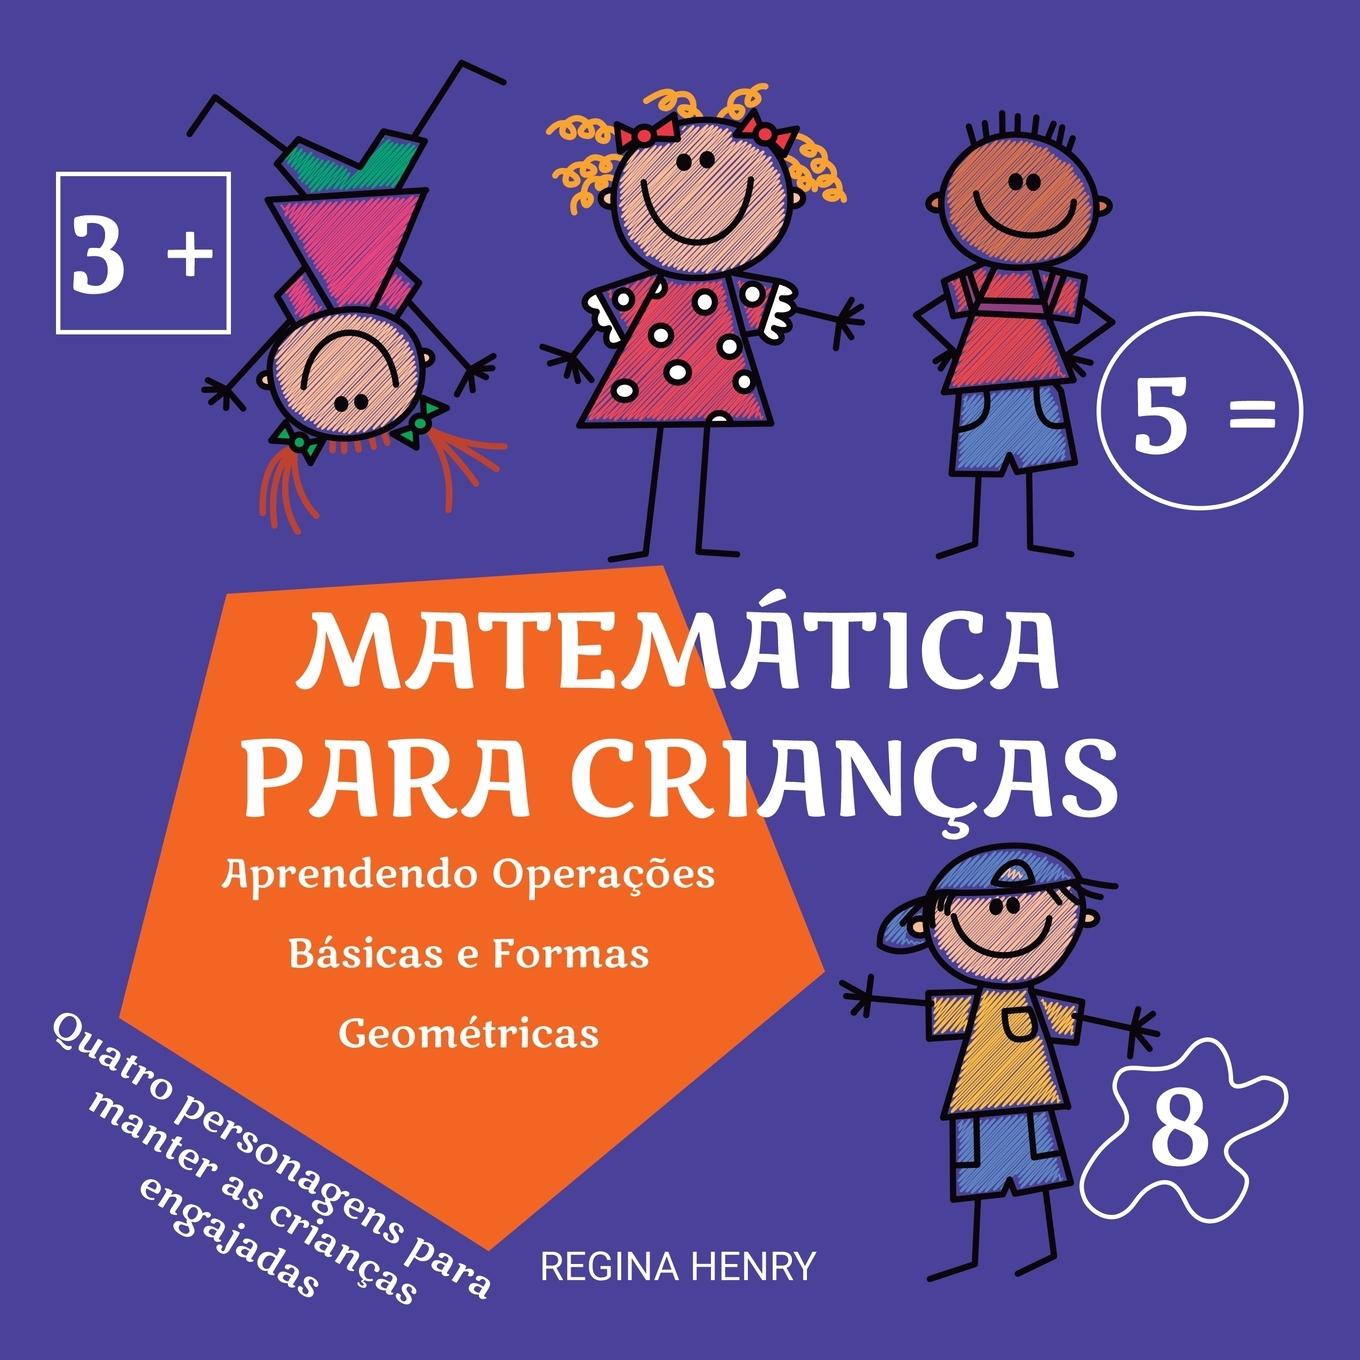 Carte Matematica para Criancas 